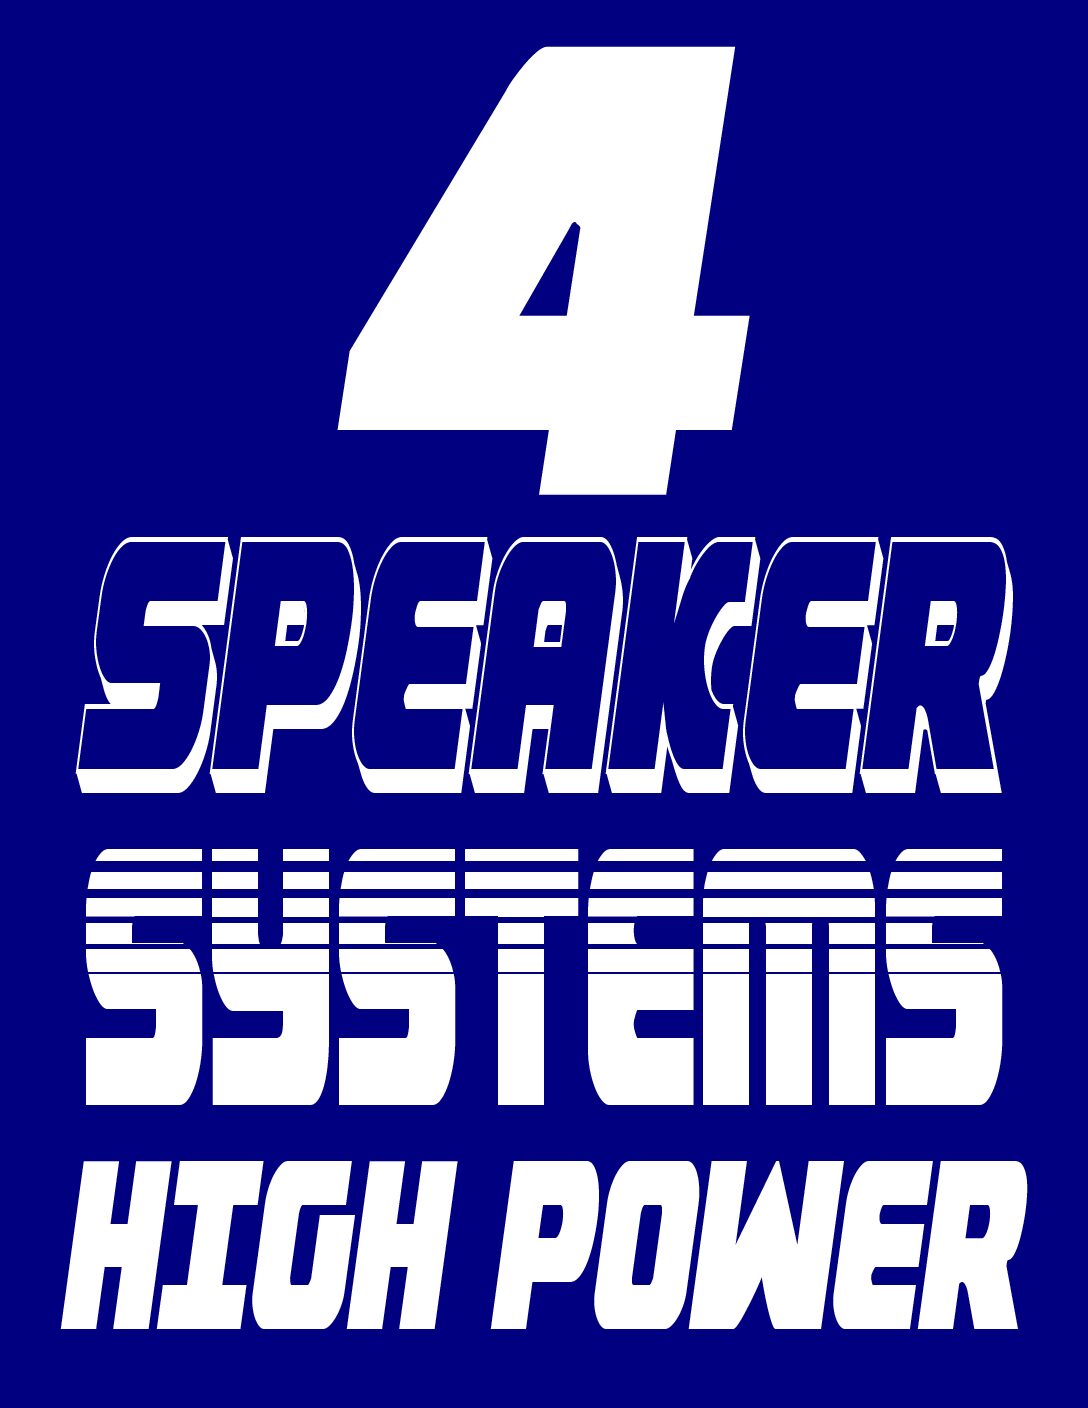 4 SPEAKER SYSTEMS HIGH POWER